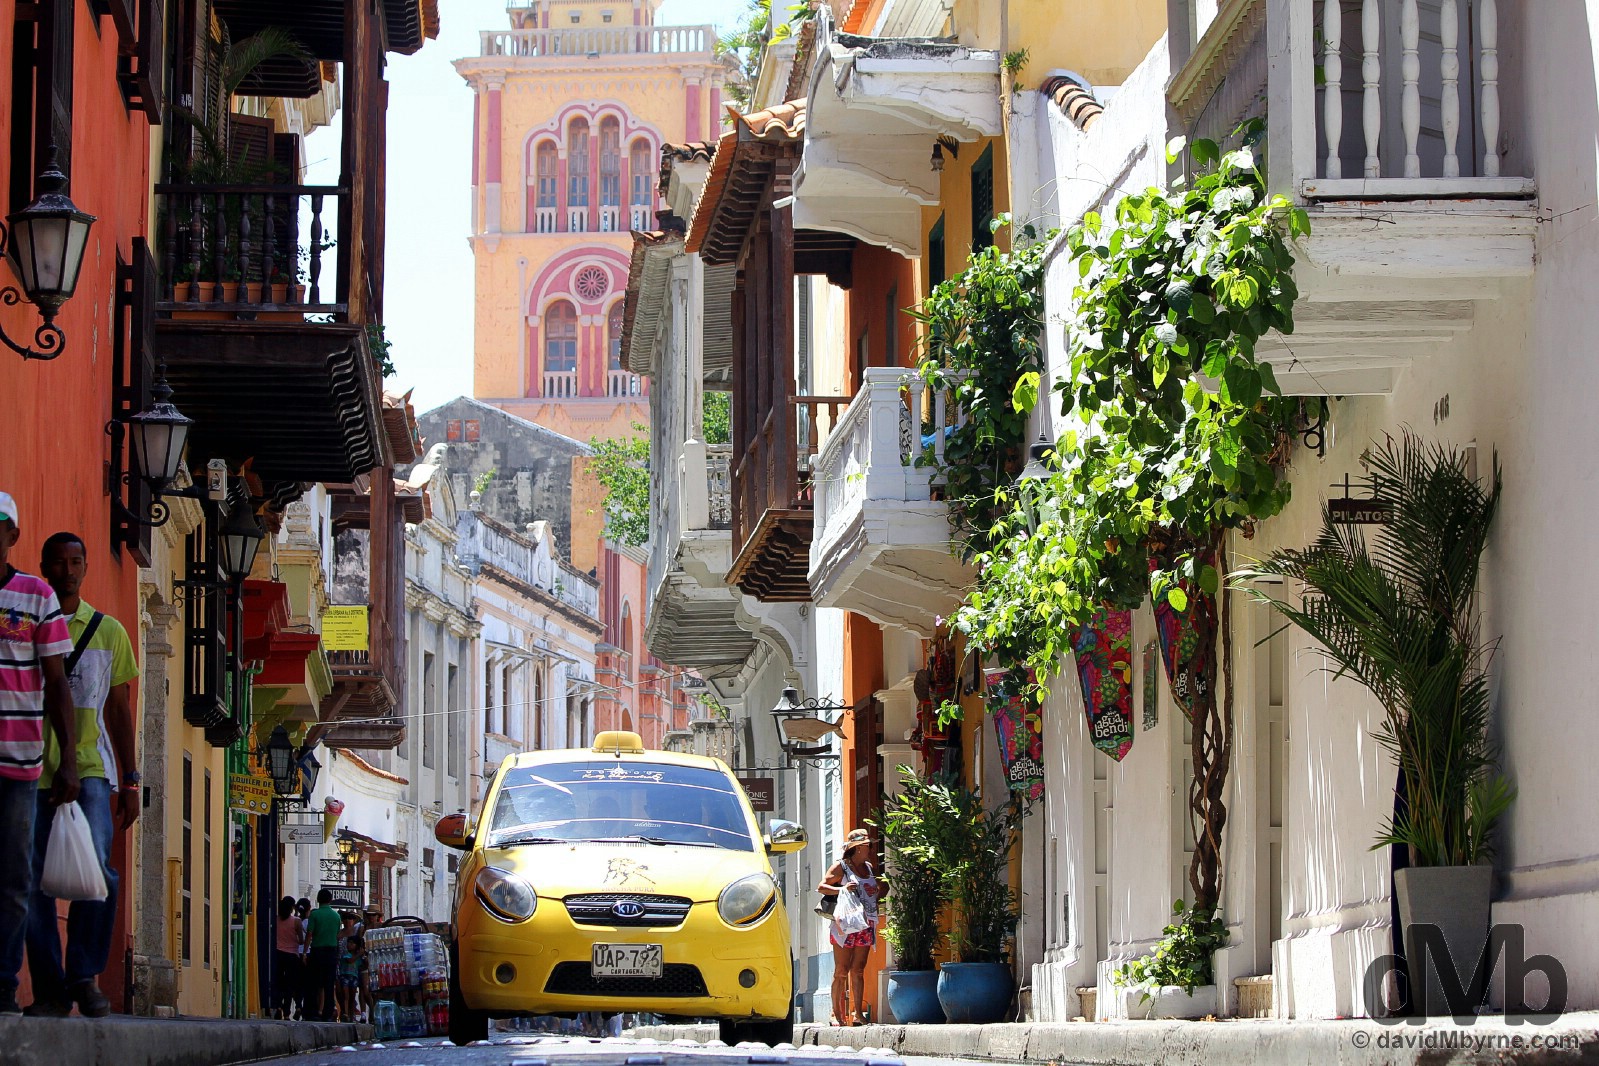 Calle de la Estrella, Old Town, Cartagena Colombia. June 25, 2015. 